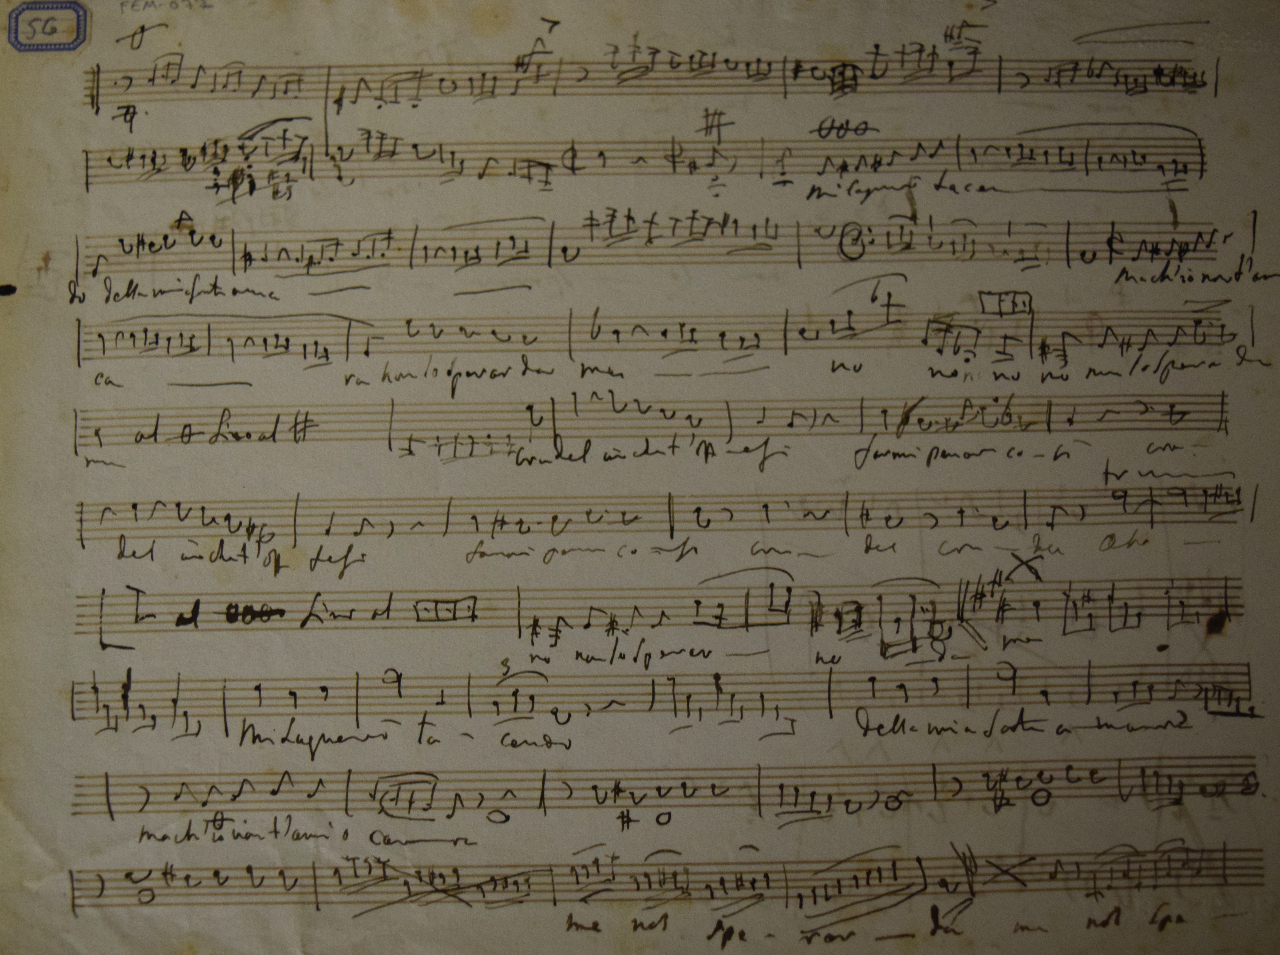 ‘Mi langerò tacendo’ of ‘Ik zal in stilte klagen’. Eén van de vele versies die Rossini componeerde op de tekst van Metastasio (1698-1782). In de eerste bundel van de ‘Péchés de vieillesse’ uit 1857 schrijft Rossini zes verschillende liederen op die ene tekst. Daarnaast componeert hij nog andere zettingen. Deze autografische schets bevat enkel de zangstem en de baslijn. Correcties zijn er nauwelijks en het geeft de indruk dat Rossini bijzonder vlot kon neerschrijven. FEM-077.